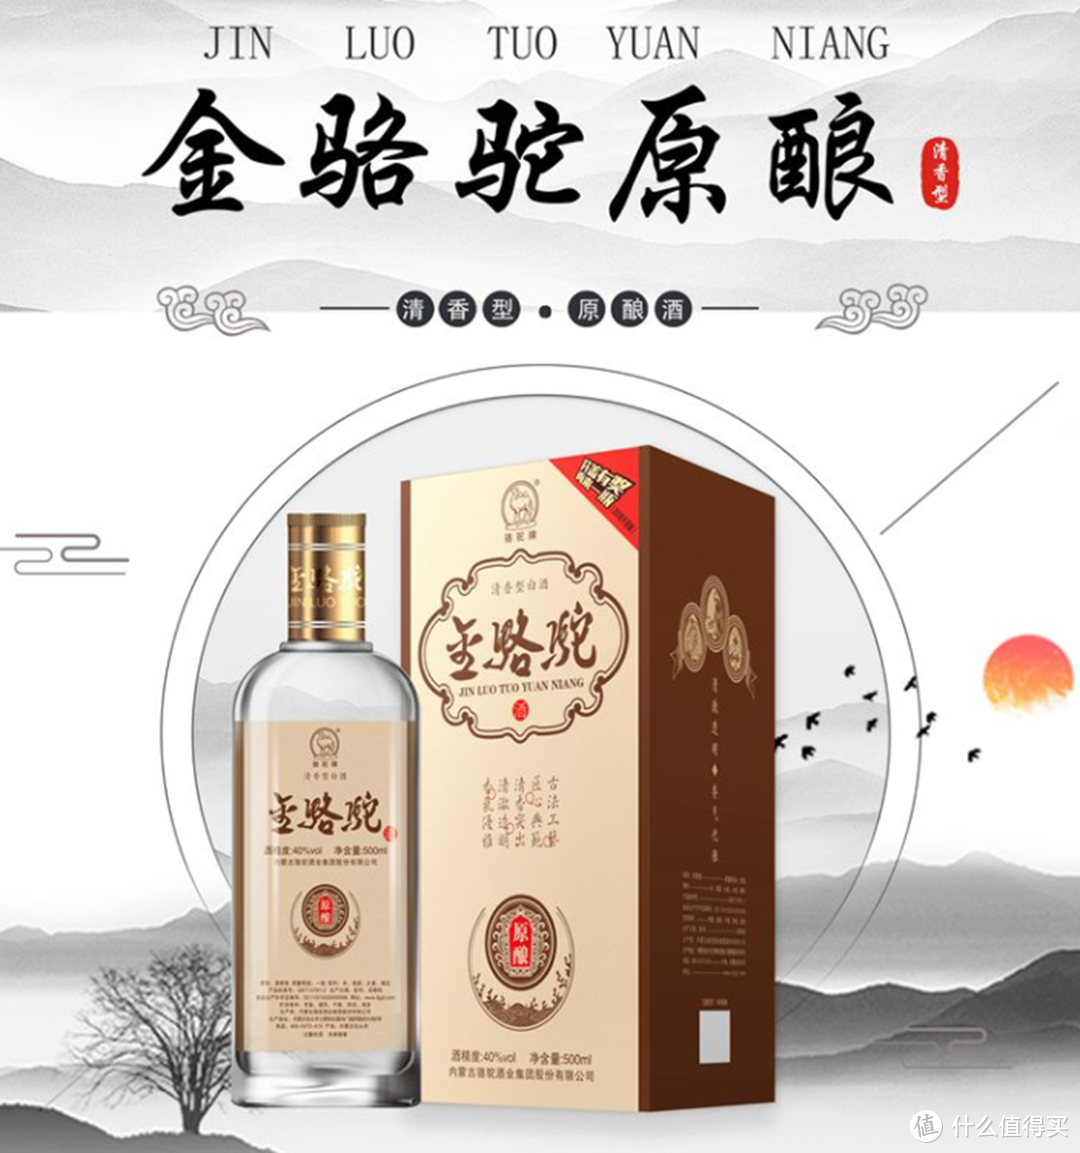 属于内蒙古酿酒企业中规模较大的白酒品牌,金骆驼酒主要生产清香型